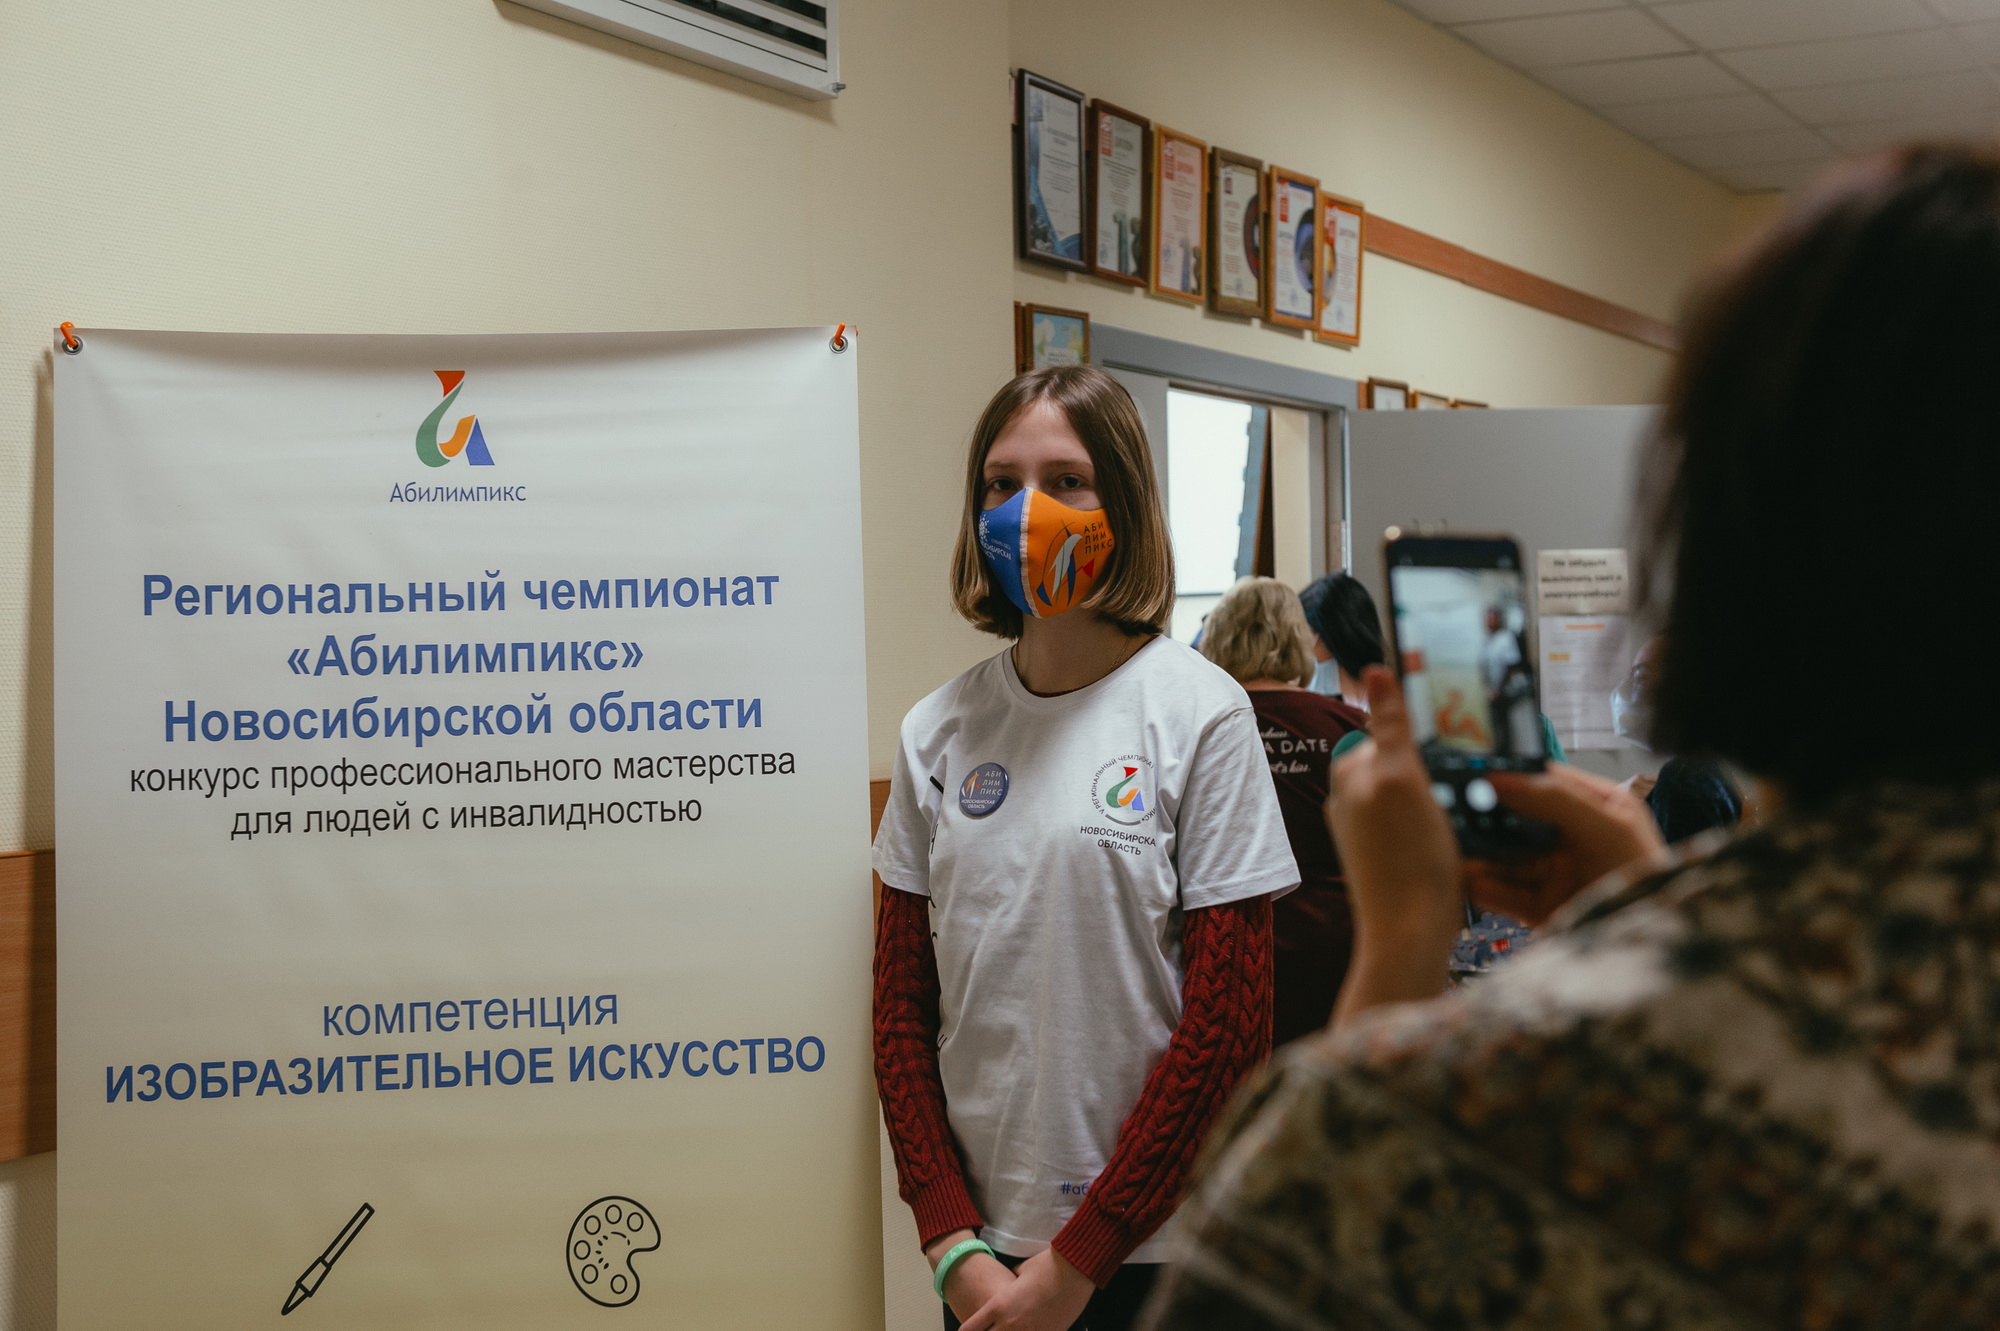 РУМЦ НГТУ НЭТИ провел мастер-класс для студентов с инвалидностью, фотография: К. Жуков